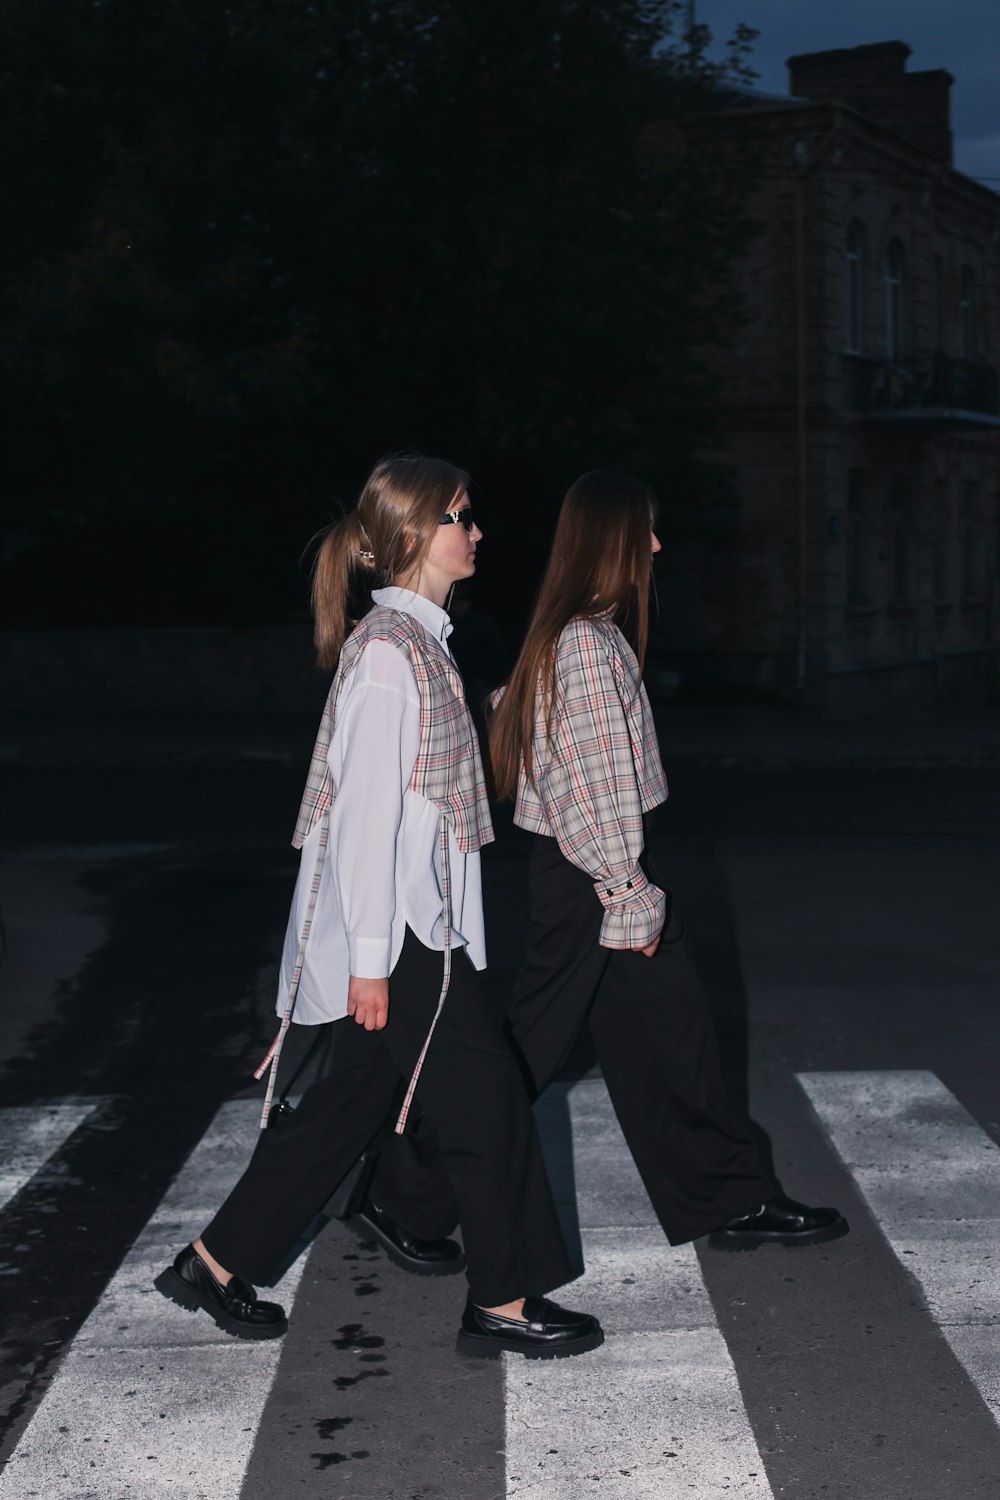 two women walking across a cross walk at night